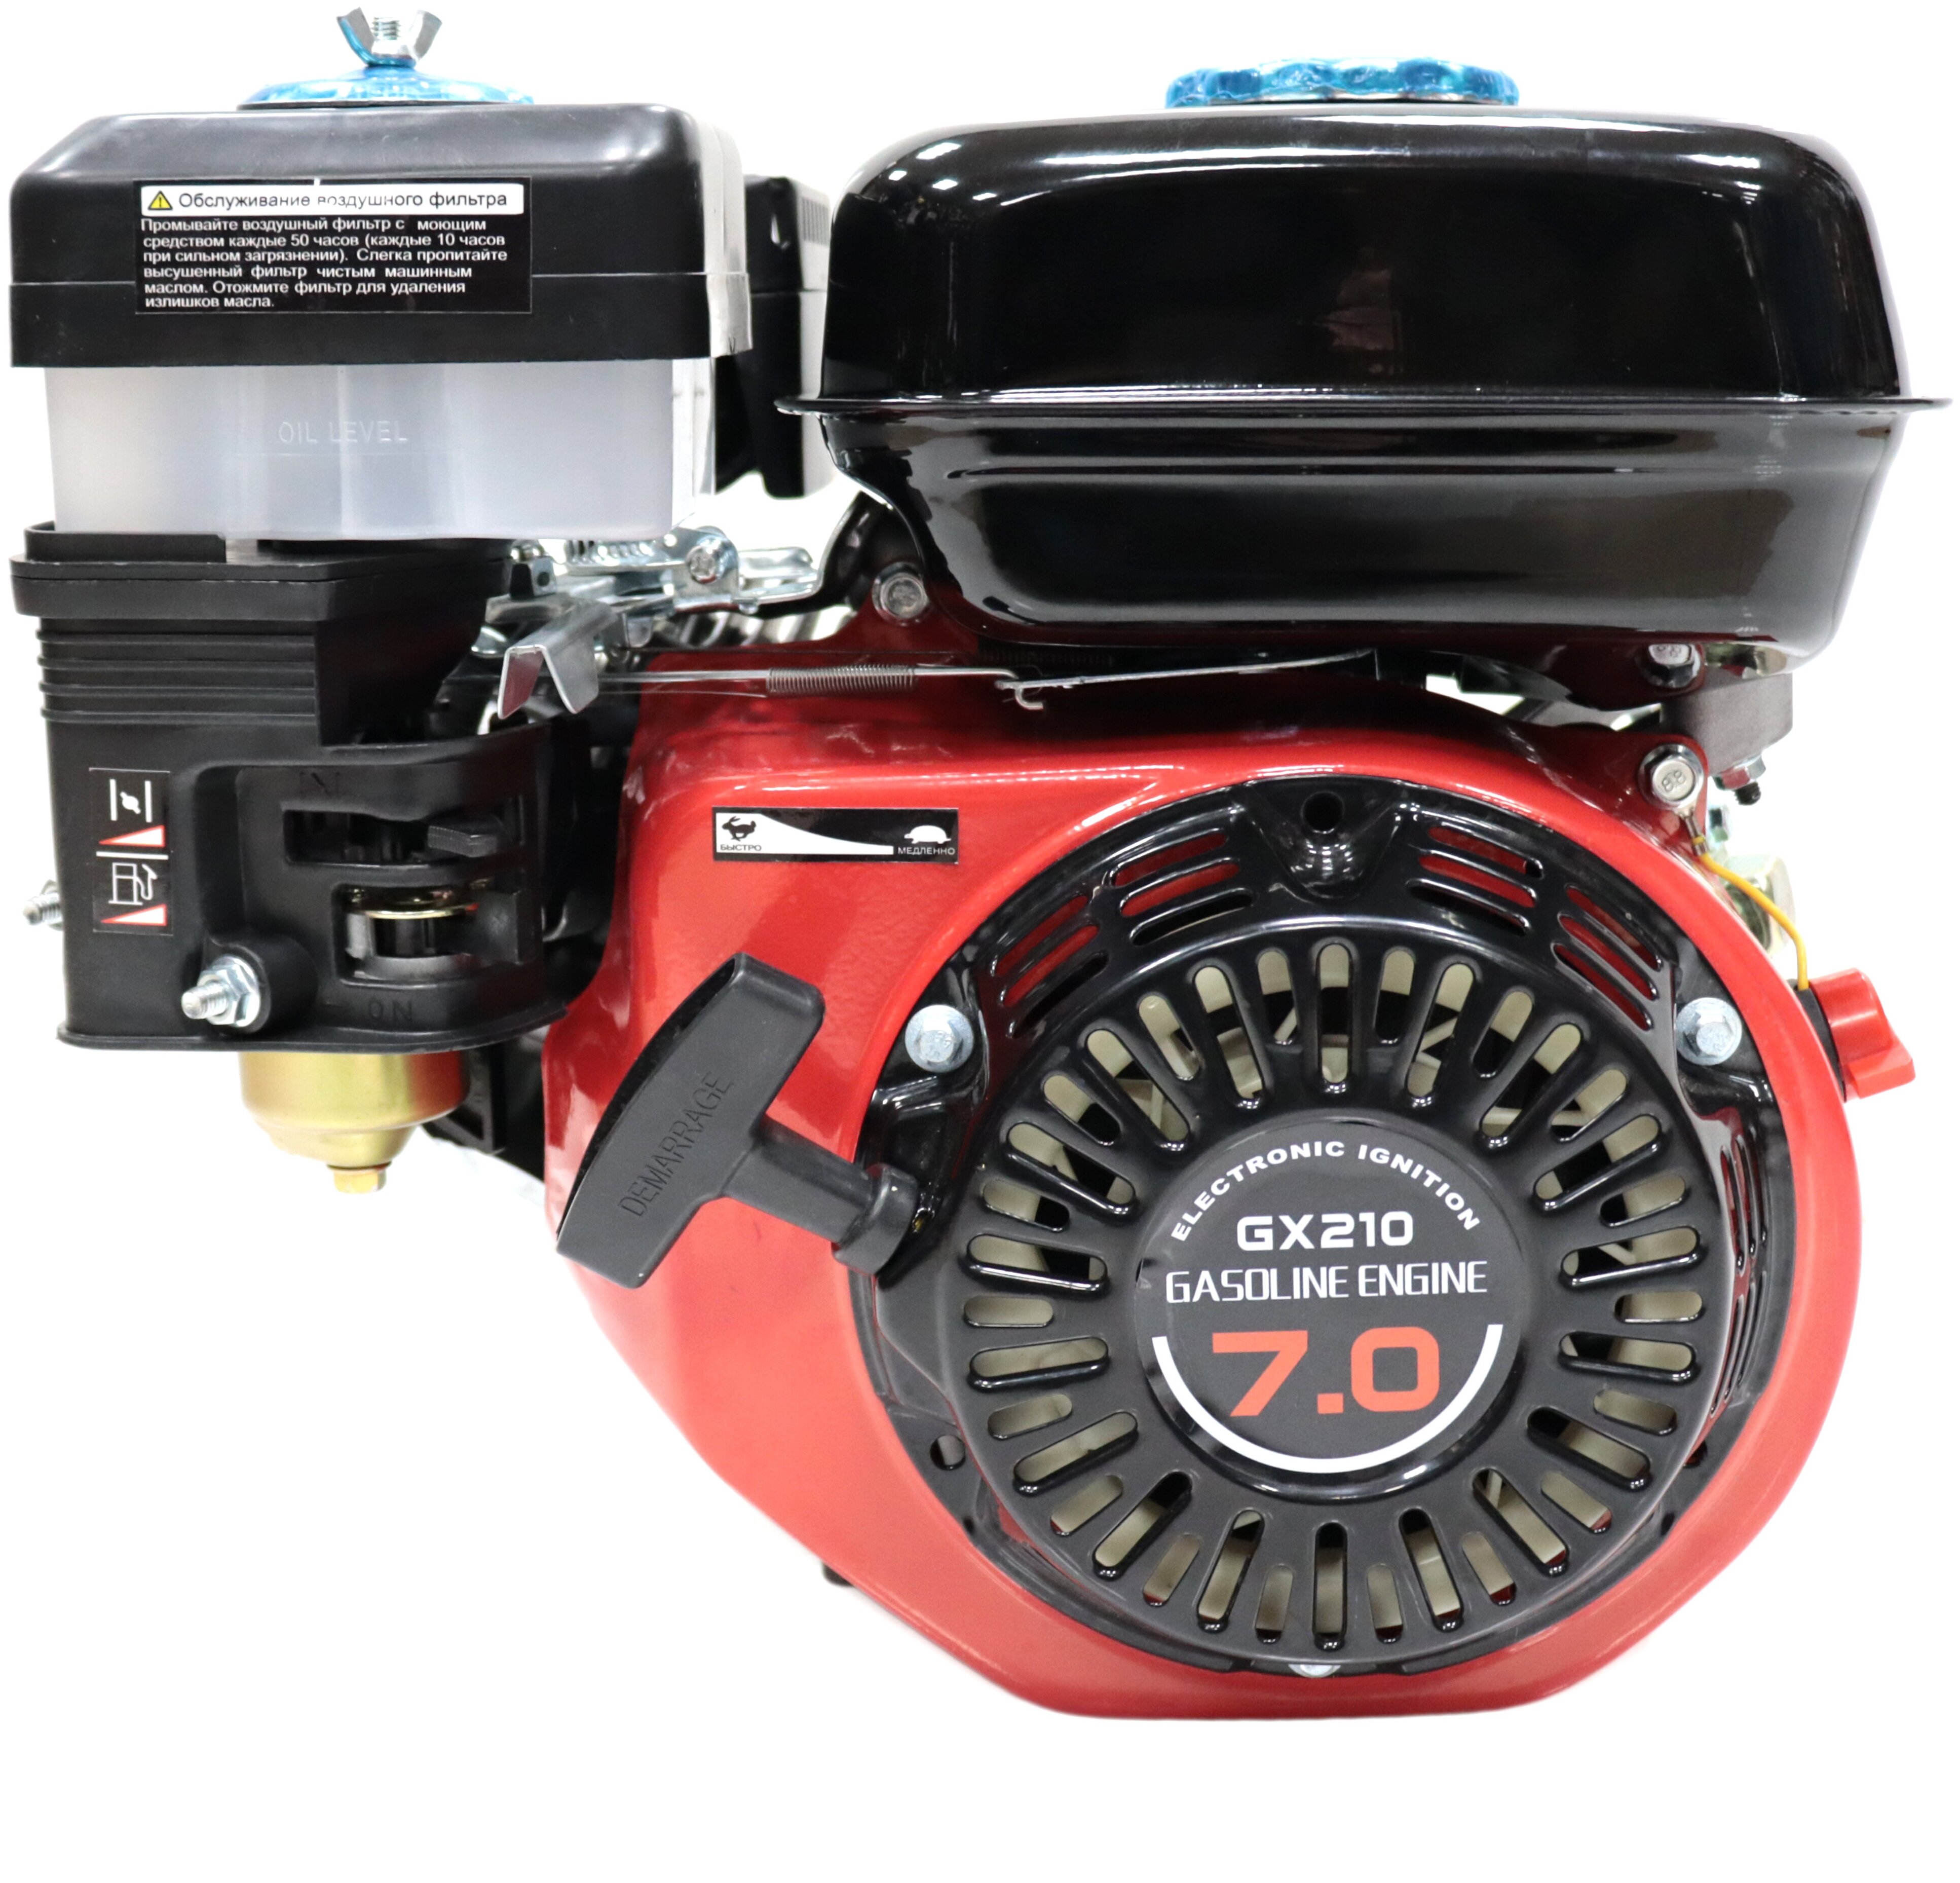 Двигатель "Krotof"GX210(7л.с,бензиновый вал,19мм,шкив)"